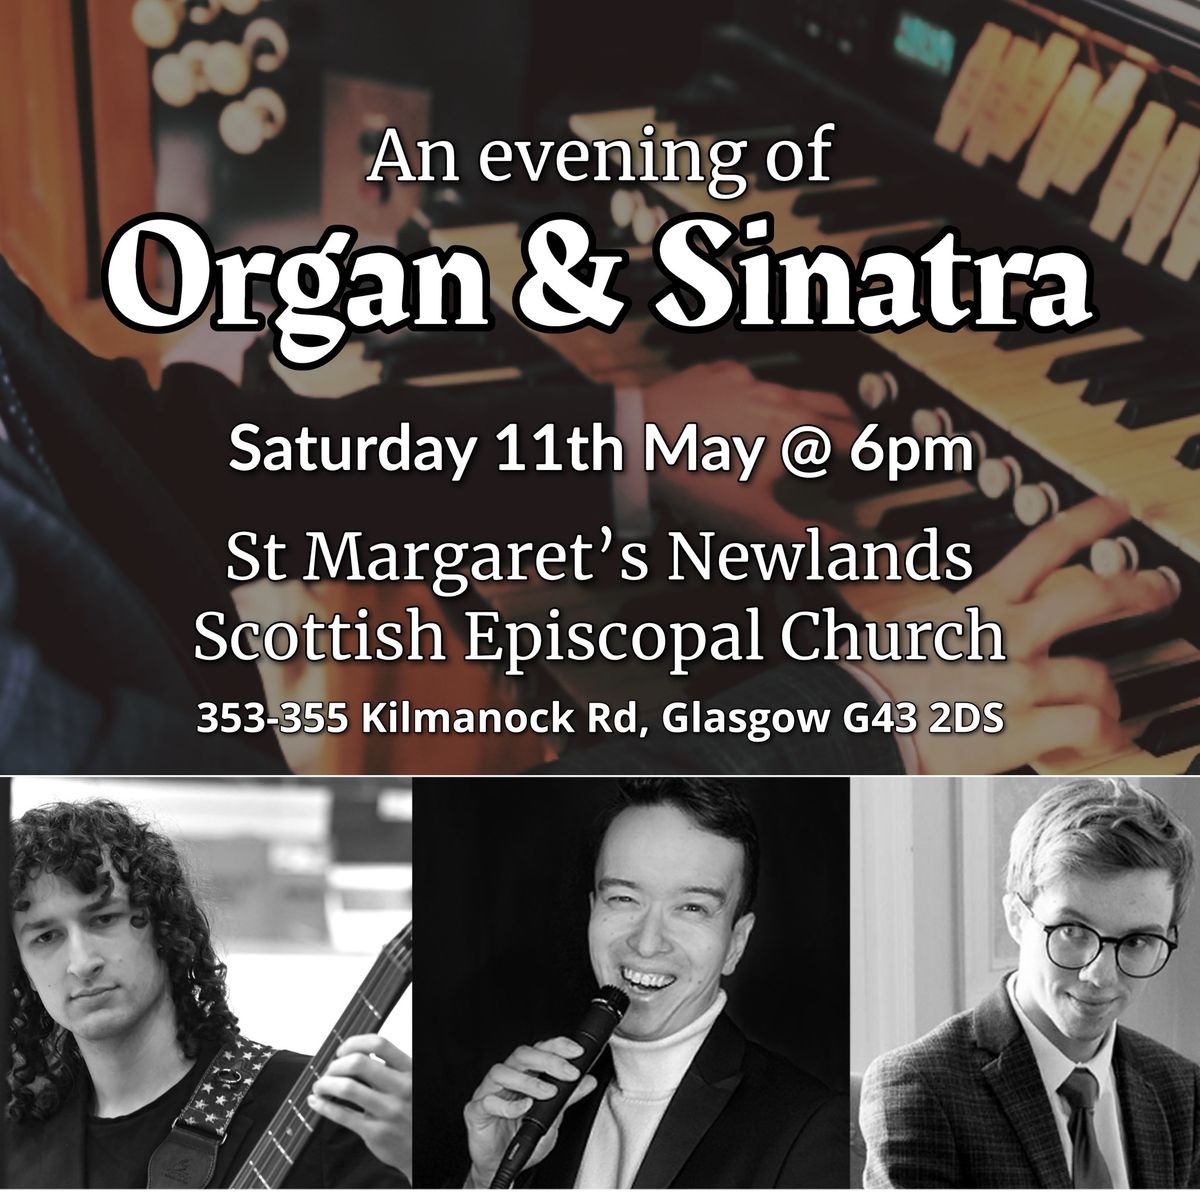 An evening of Organ & Sinatra @St. Margarets of Scotland, Newlands